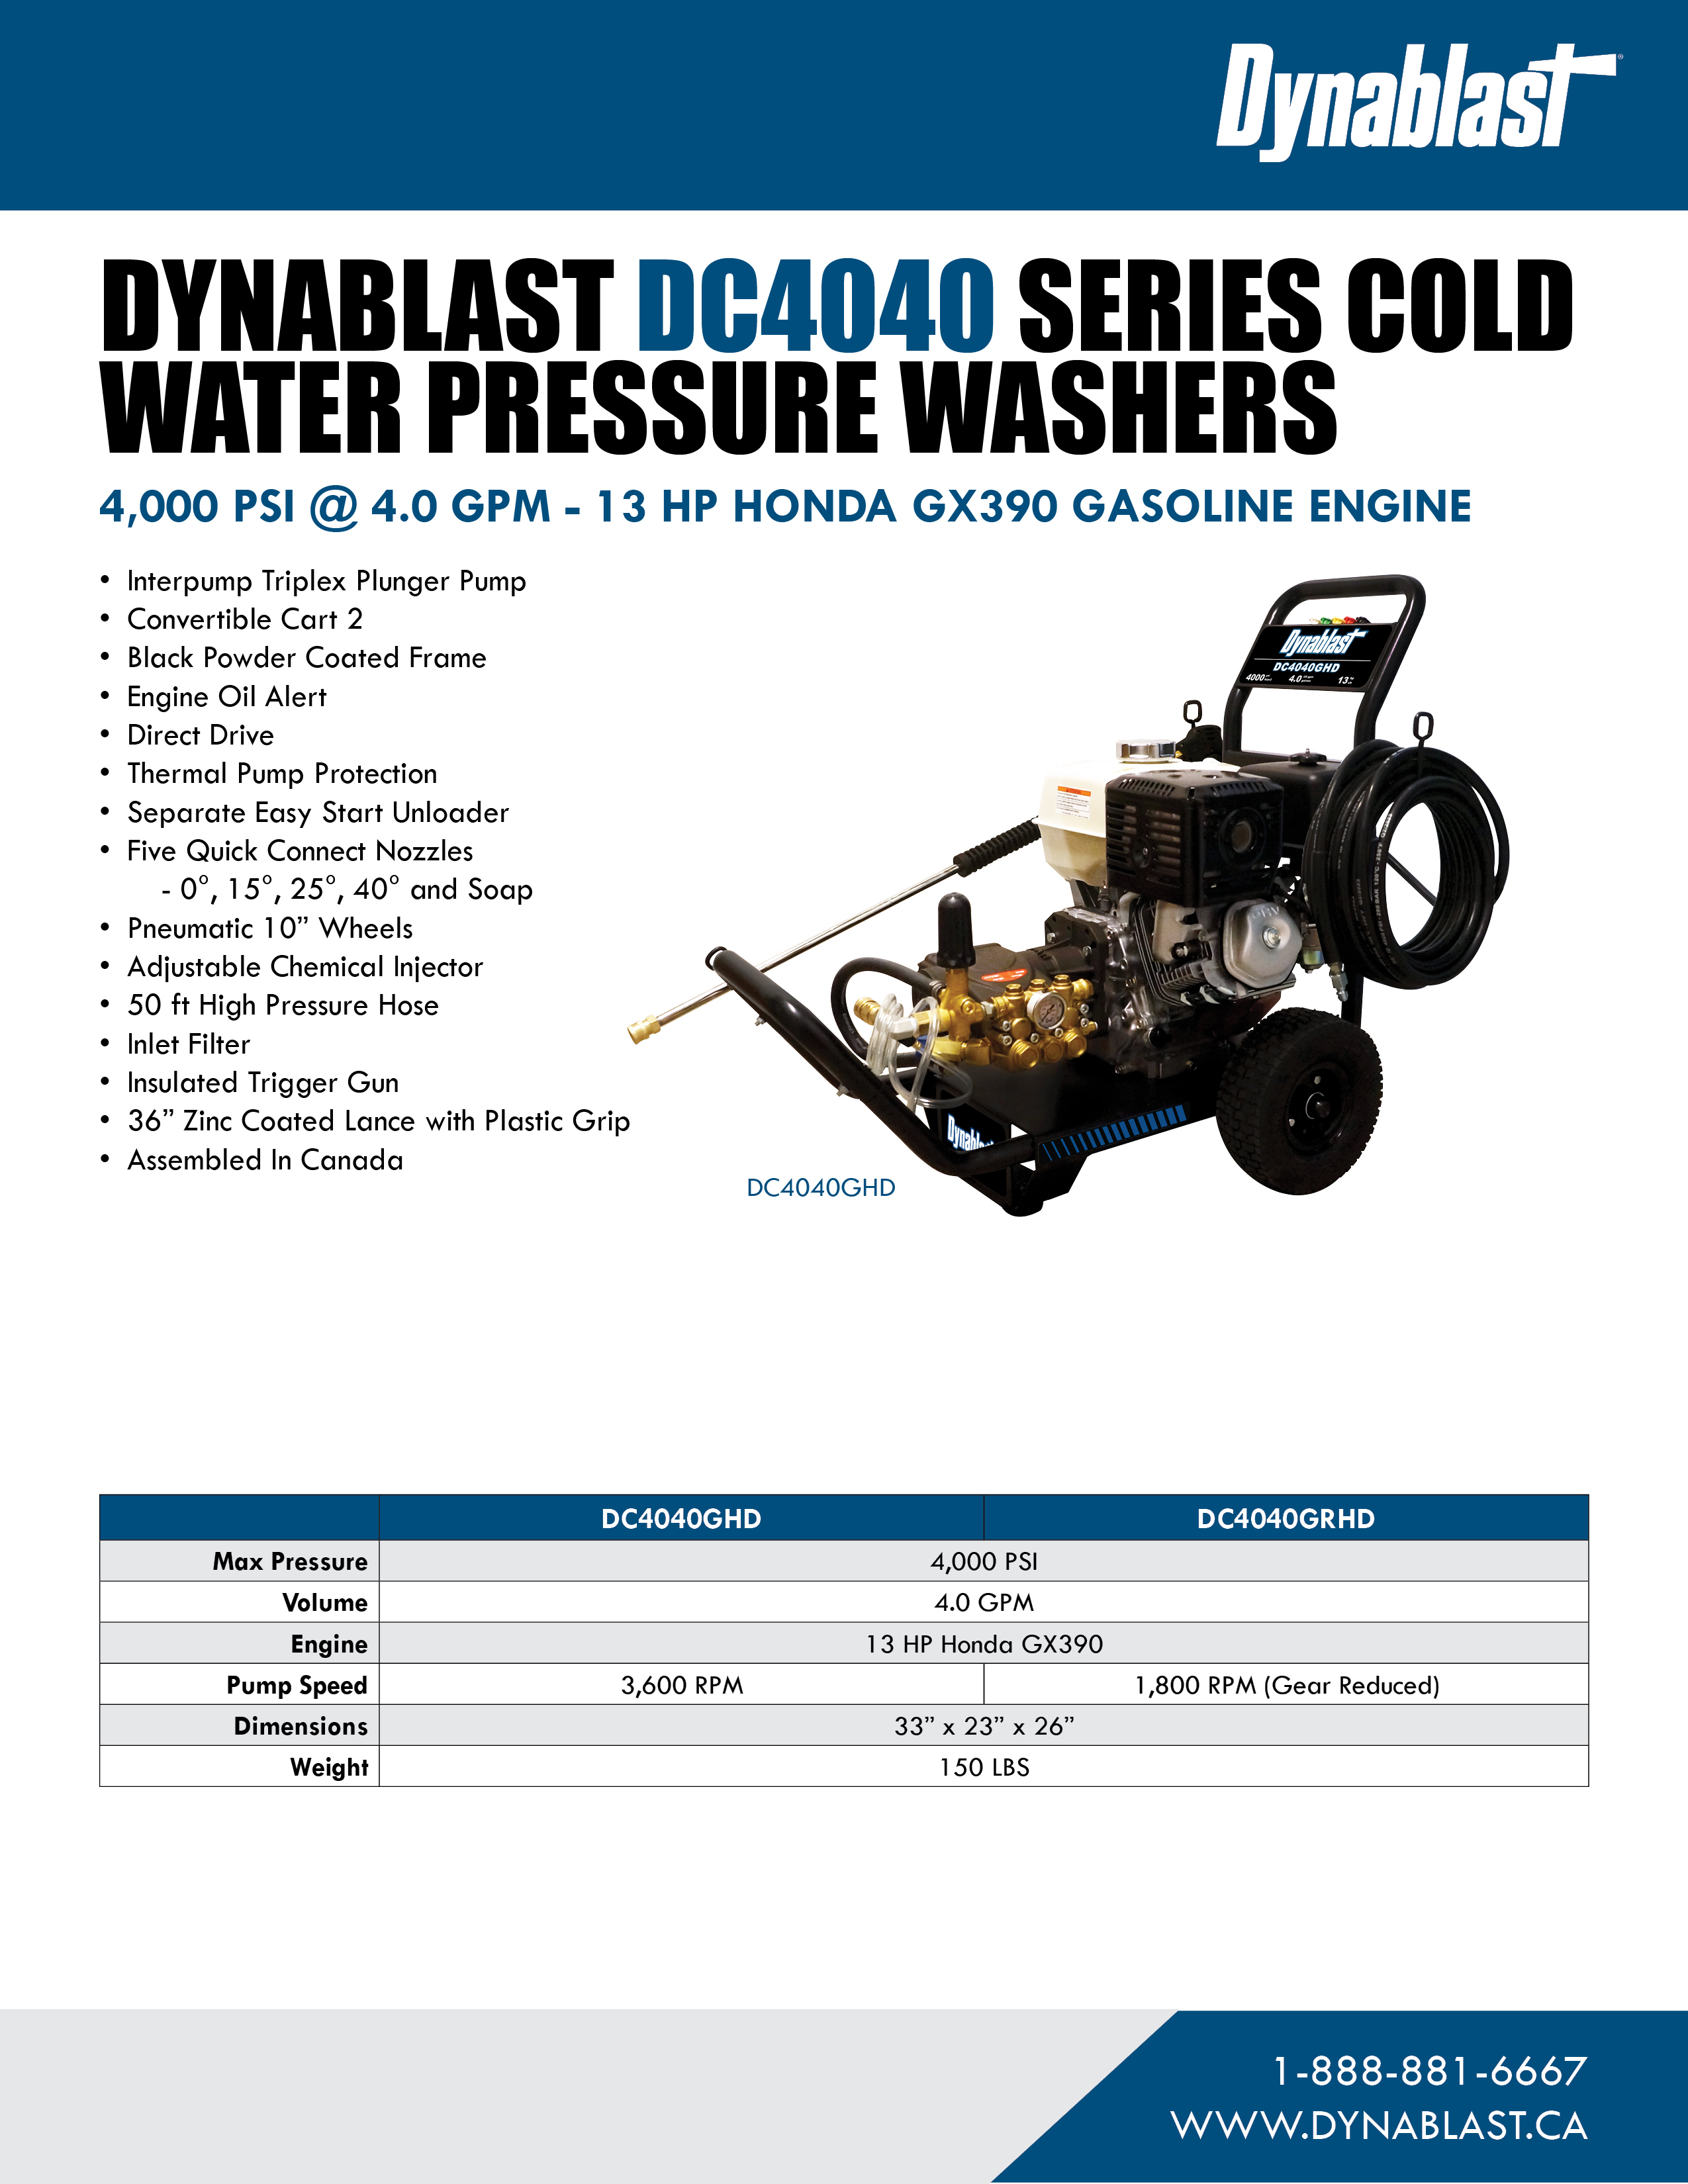 Spec Sheet - Dynablast DC4040 Series Cold Water Pressure Washer